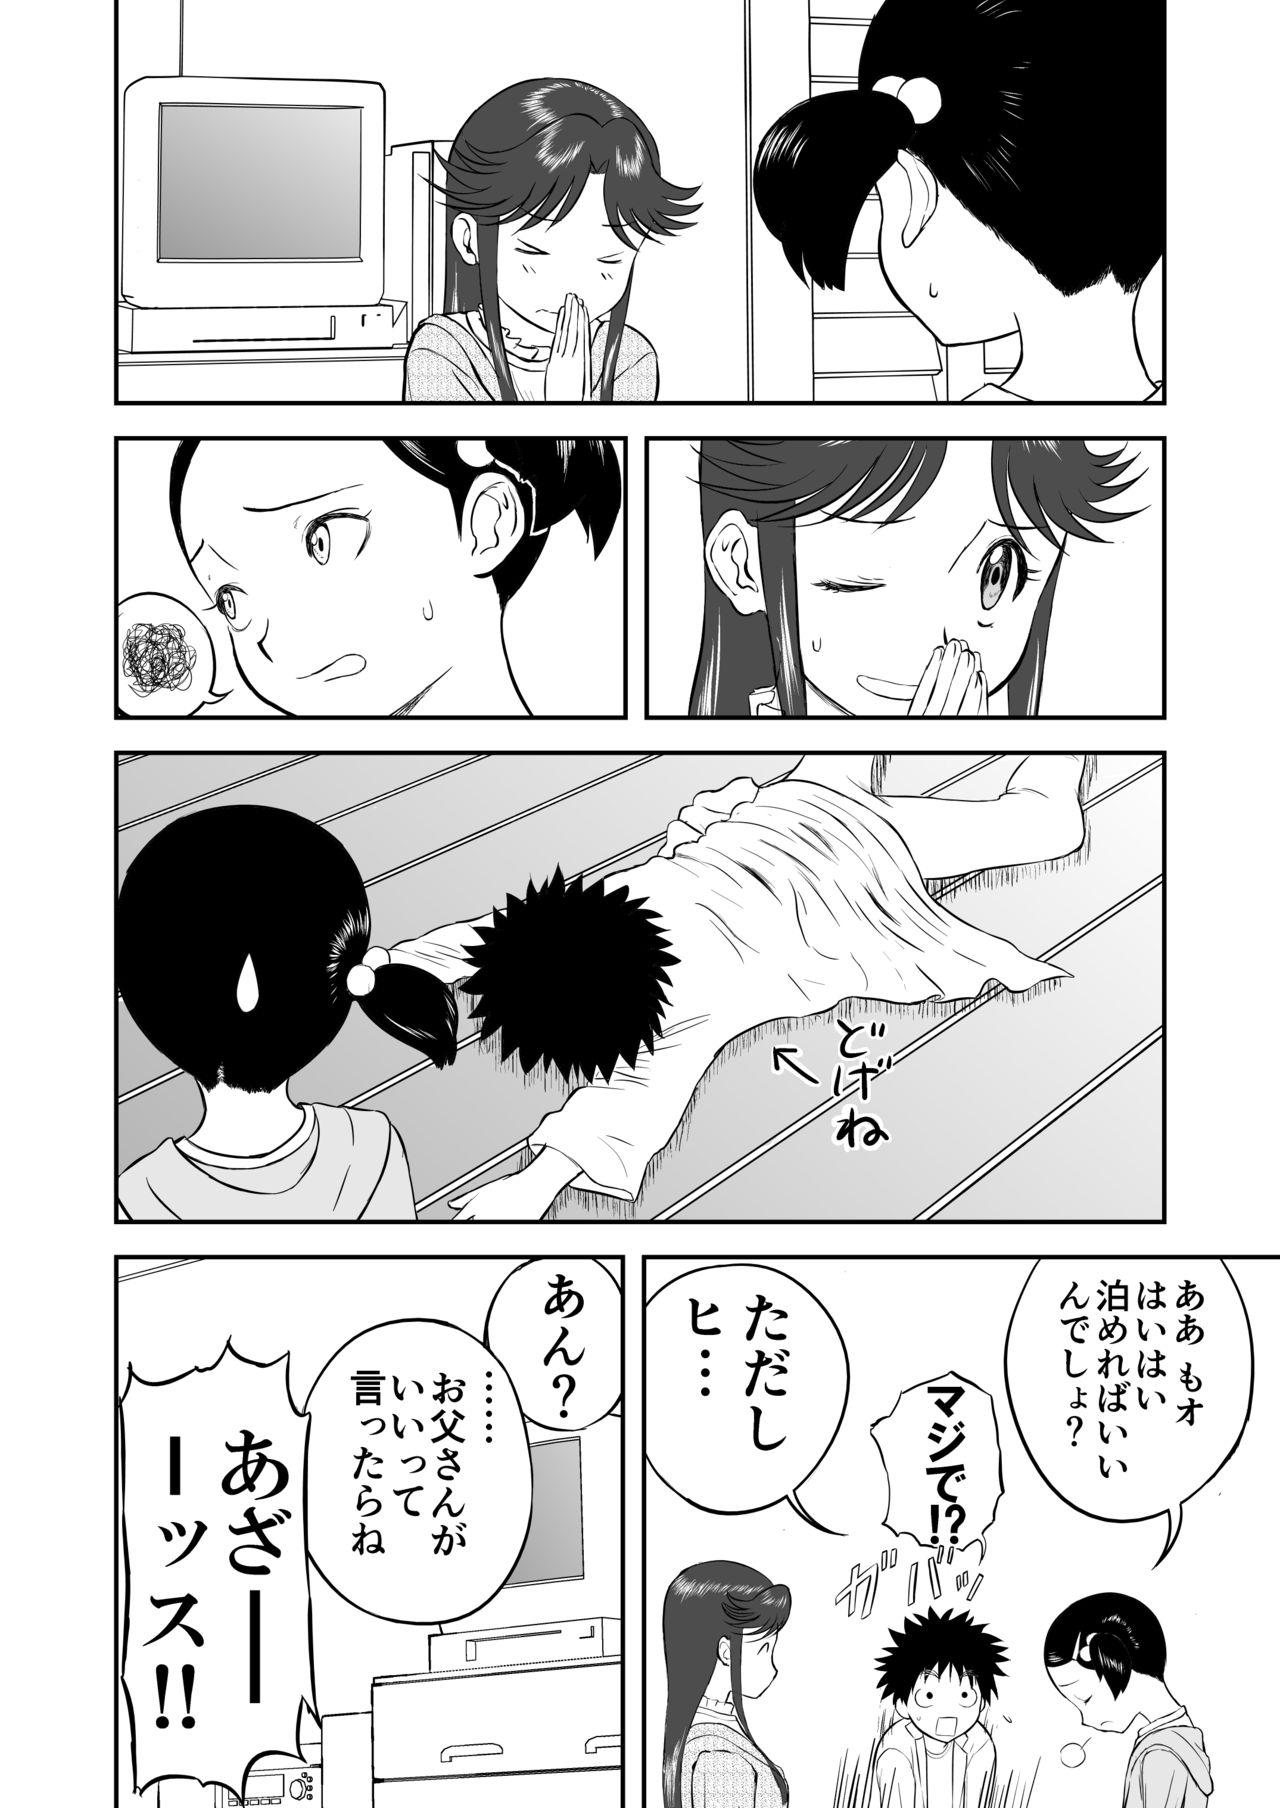 Girlsfucking Mousou Meisaku Kuradashi Gekijou Sono 3 "NanKite San" + Omake - Original Young Old - Page 6